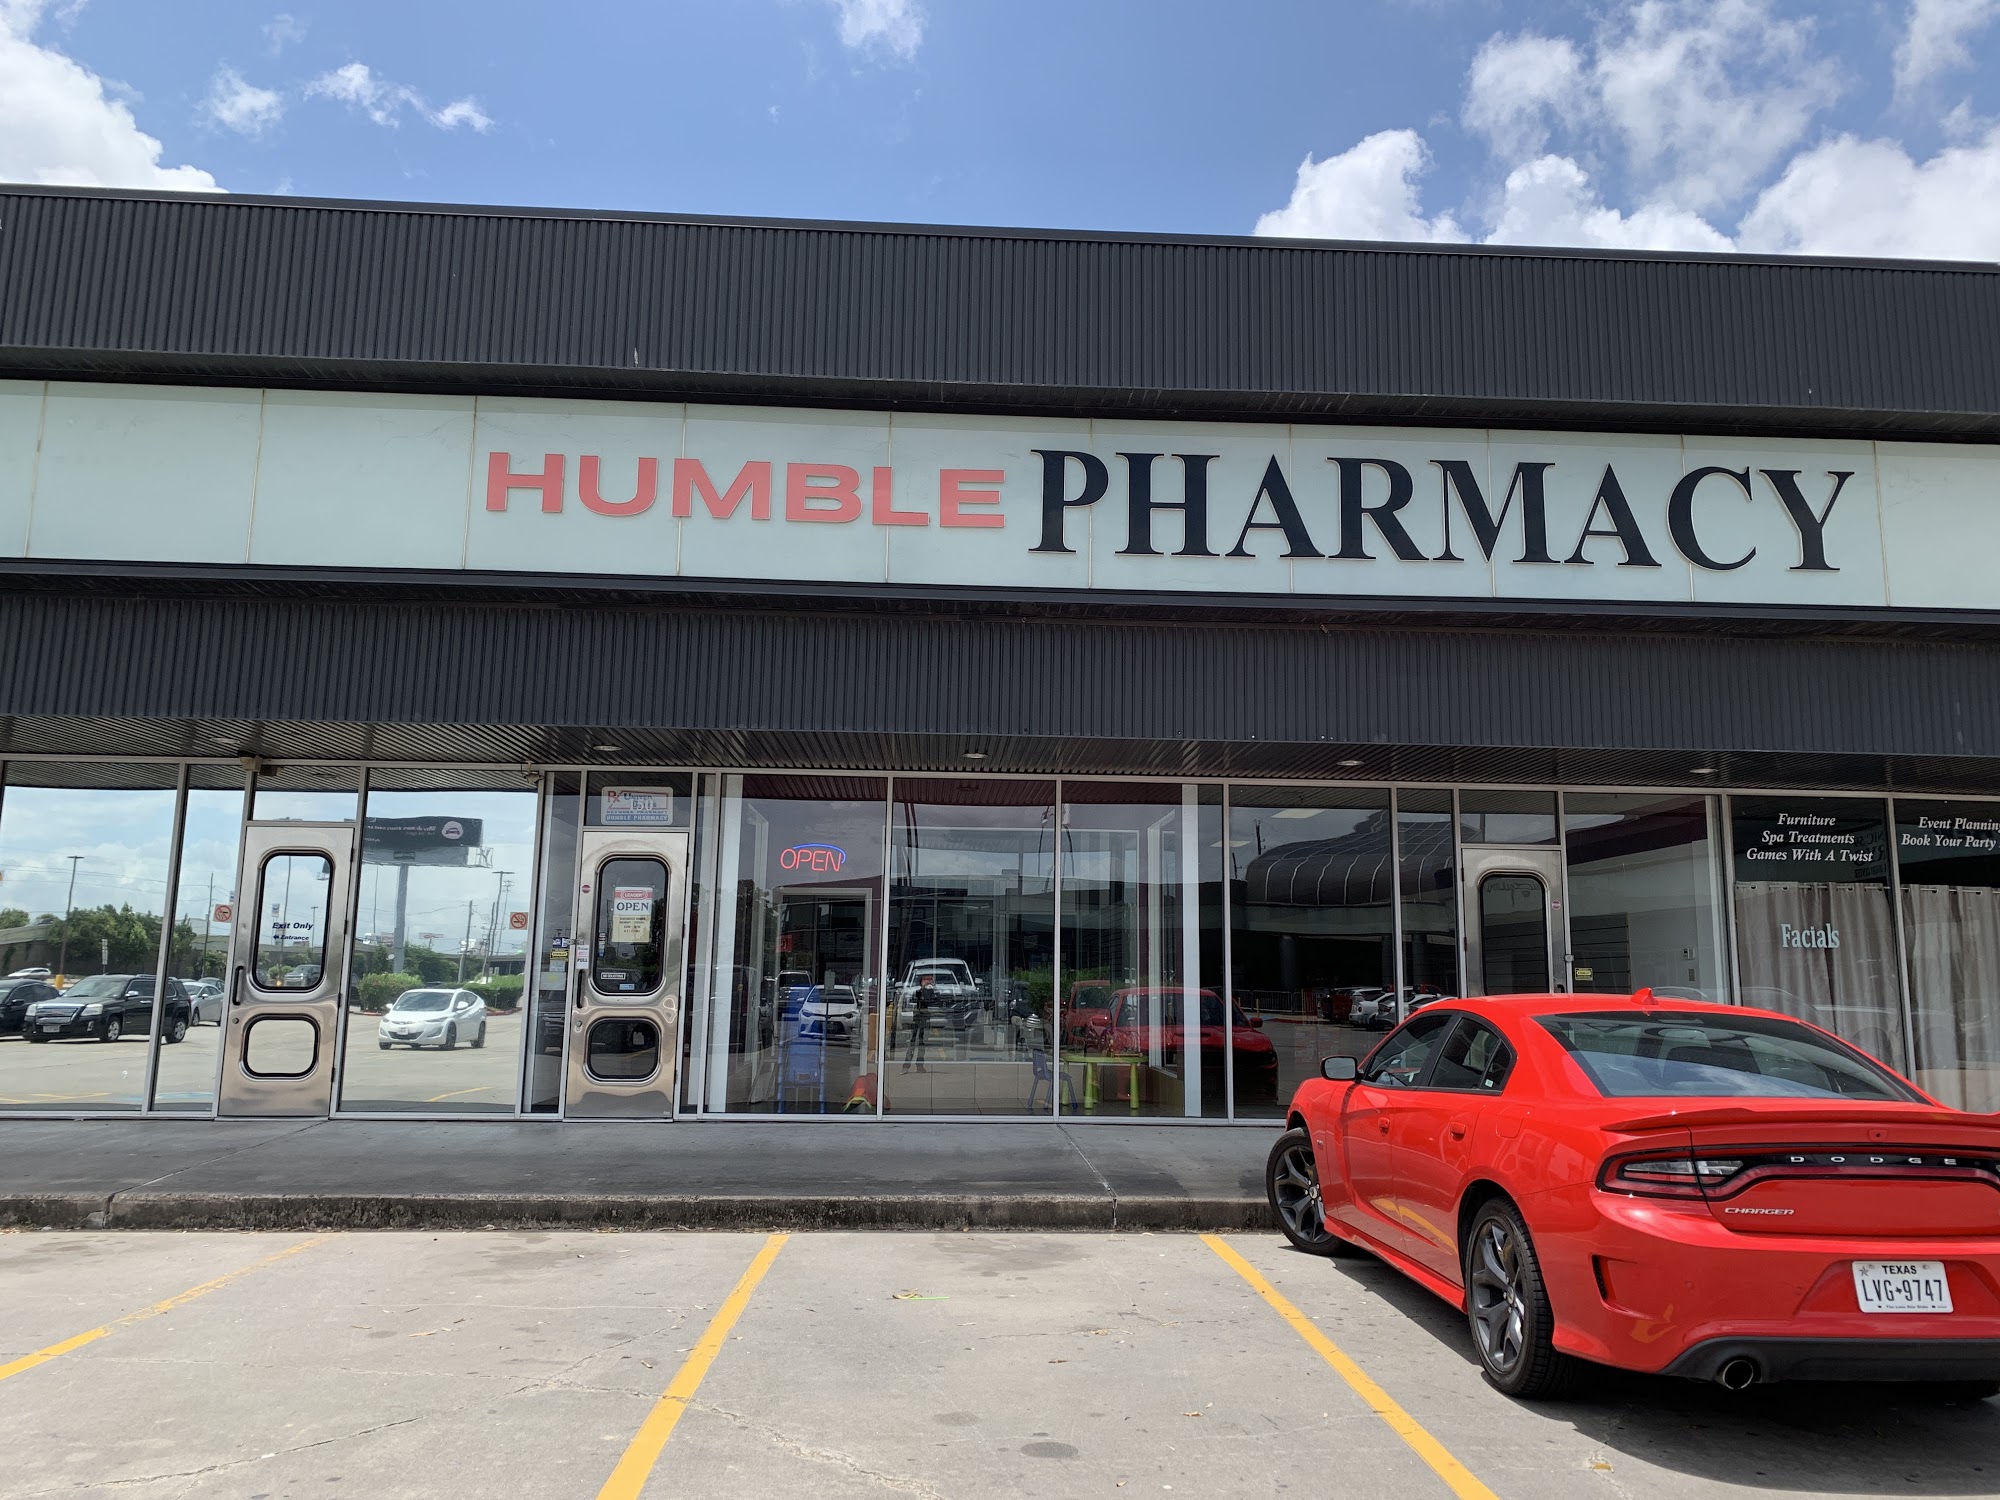 Humble Pharmacy